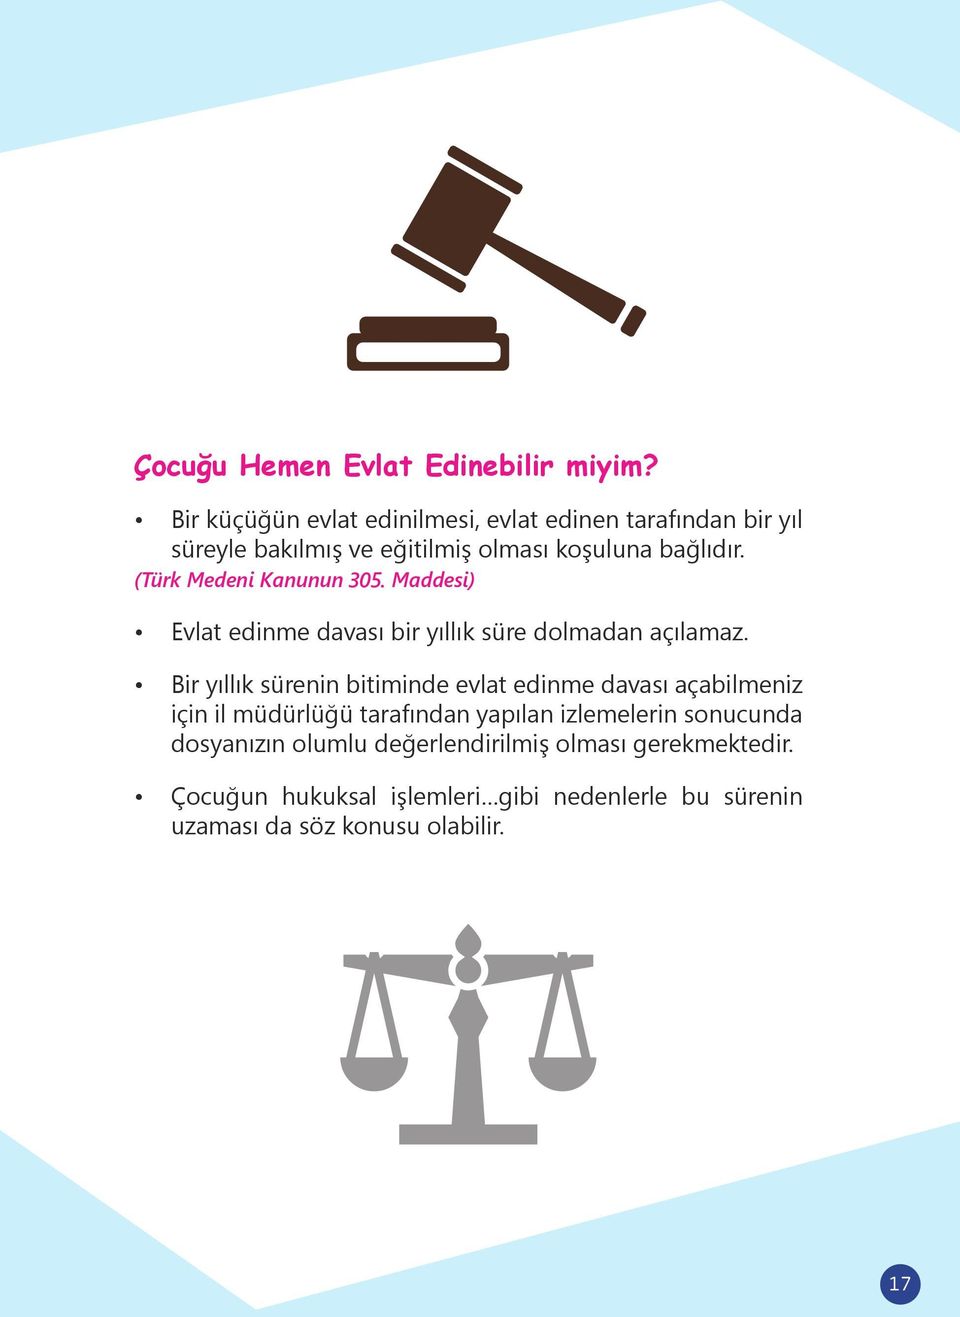 (Türk Medeni Kanunun 305. Maddesi) Evlat edinme davası bir yıllık süre dolmadan açılamaz.